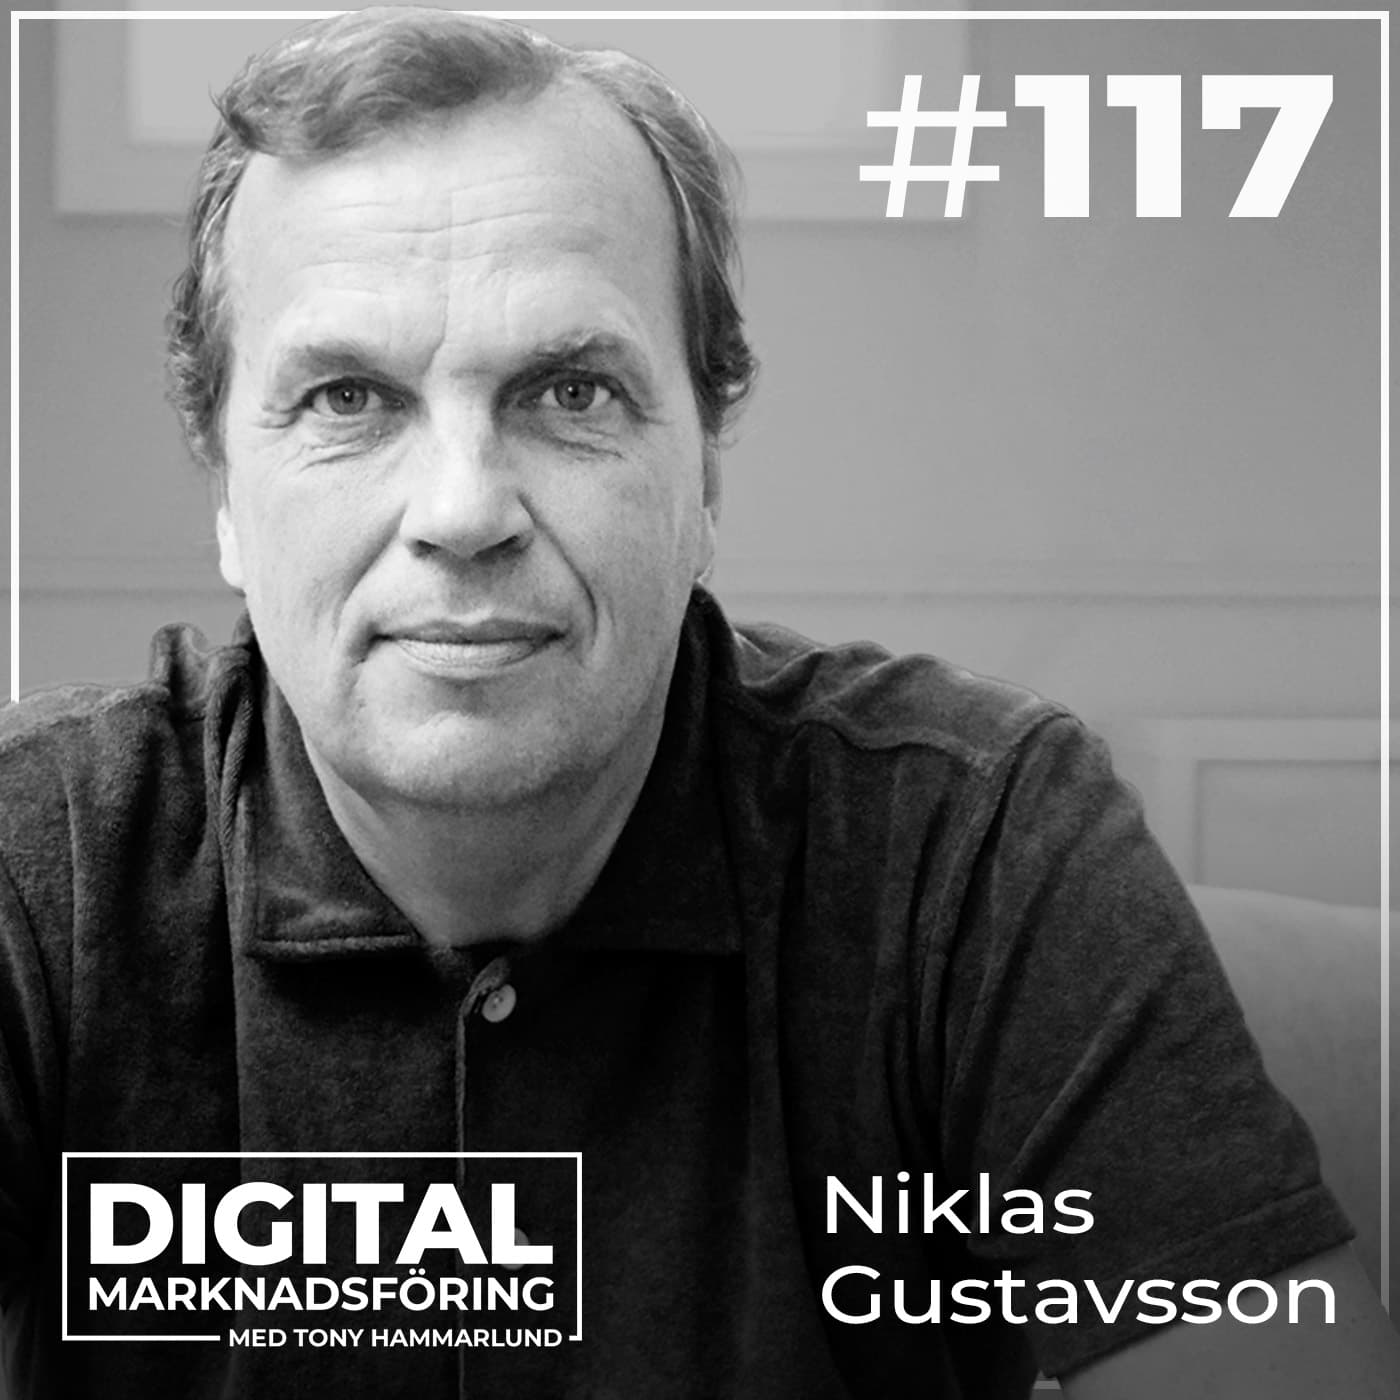 CDP för marknadsförare och dess plats i martech-stacken – Niklas Gustavsson #117